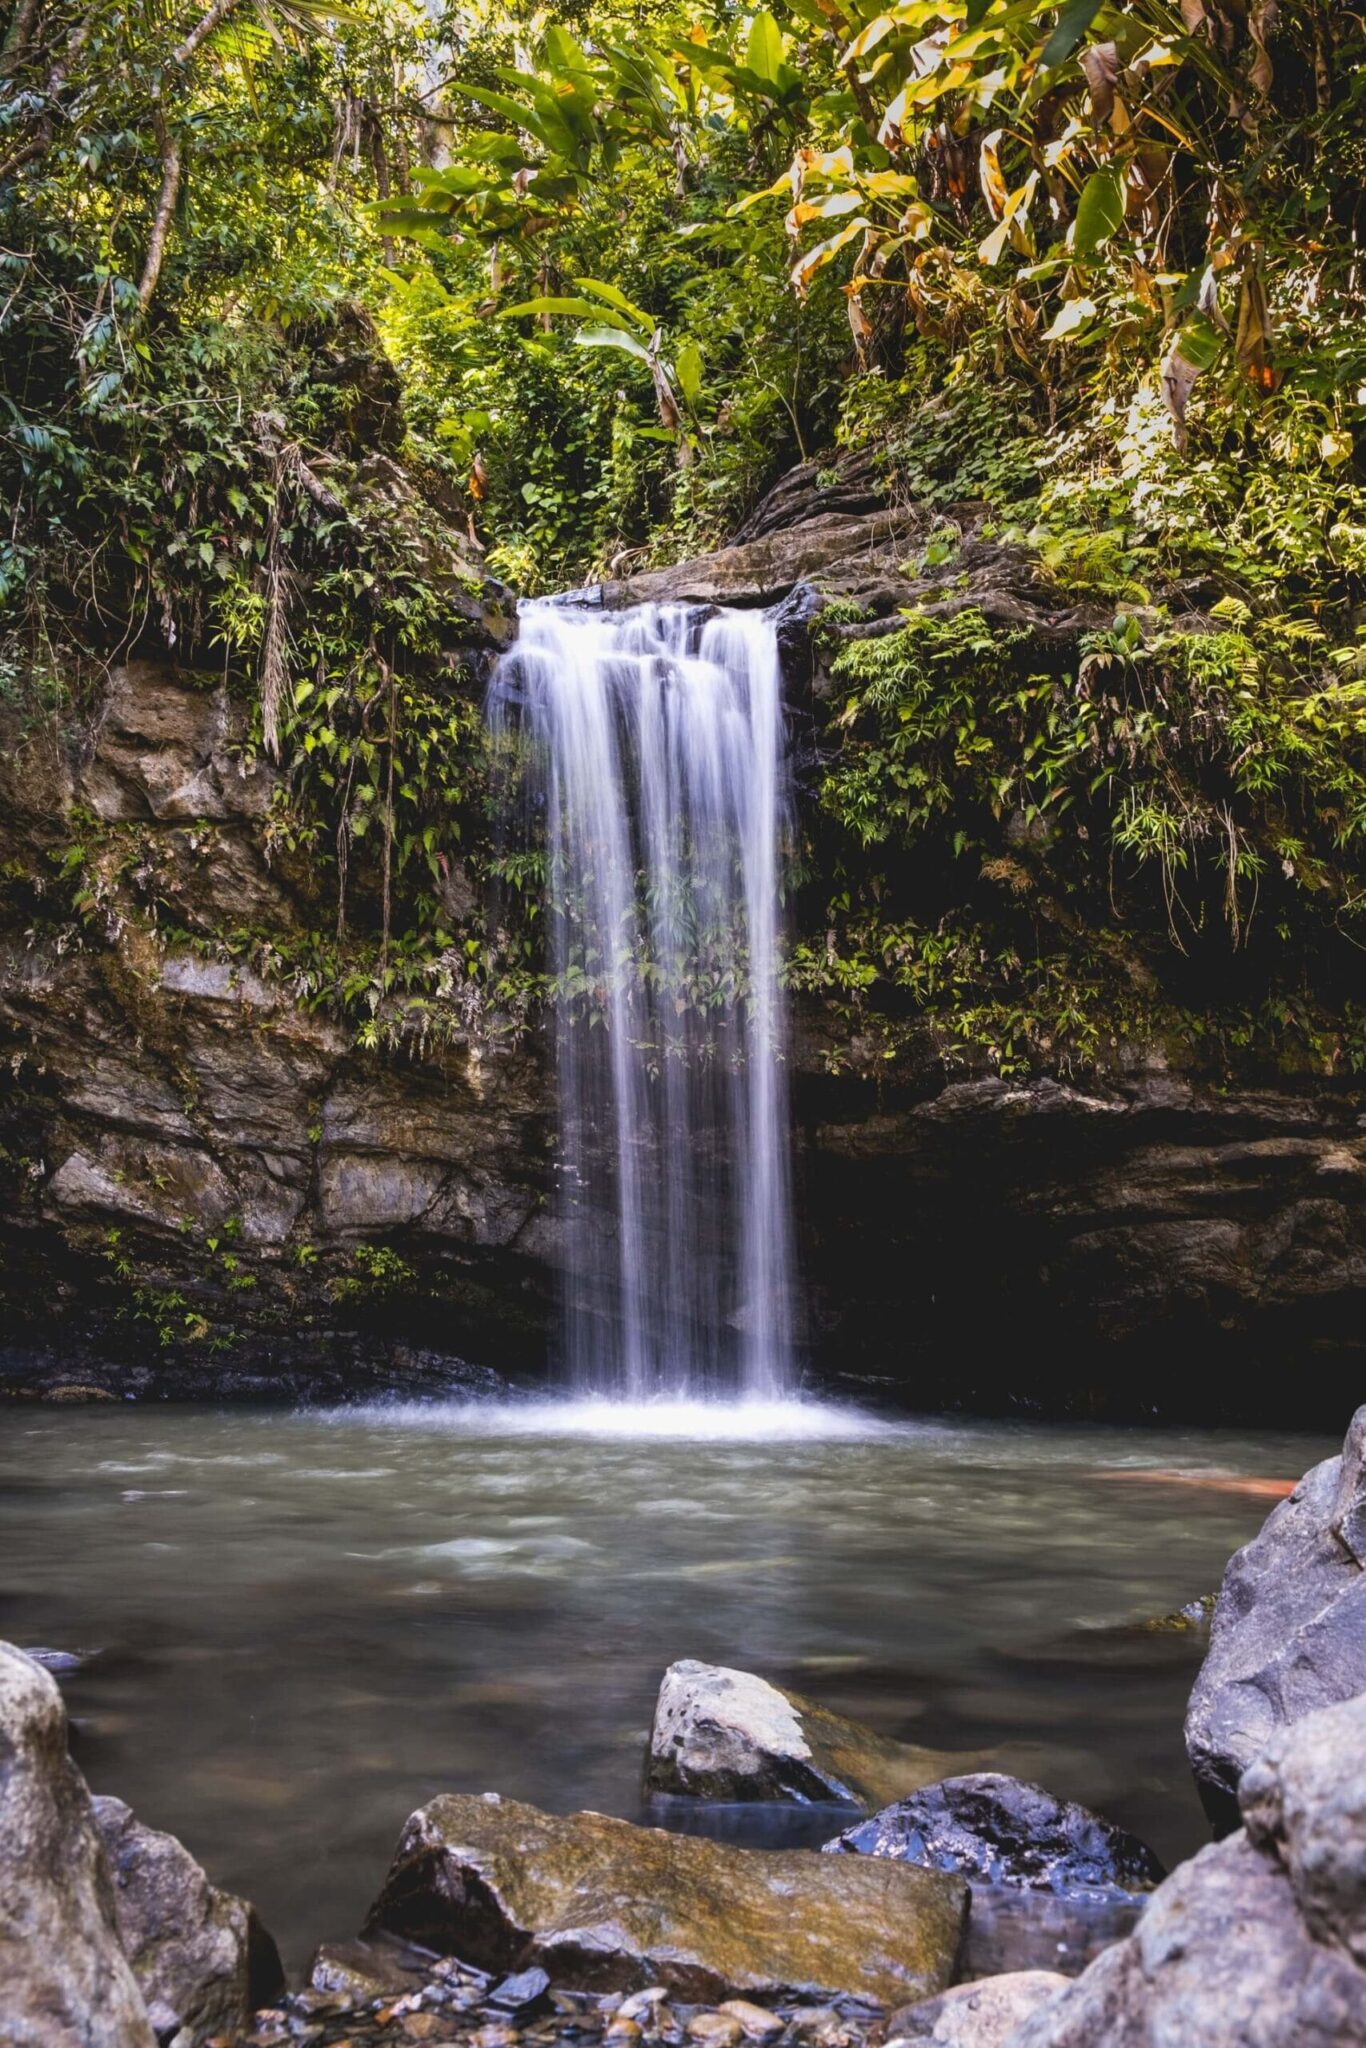 El Yunque Rainforest, Puerto Rico